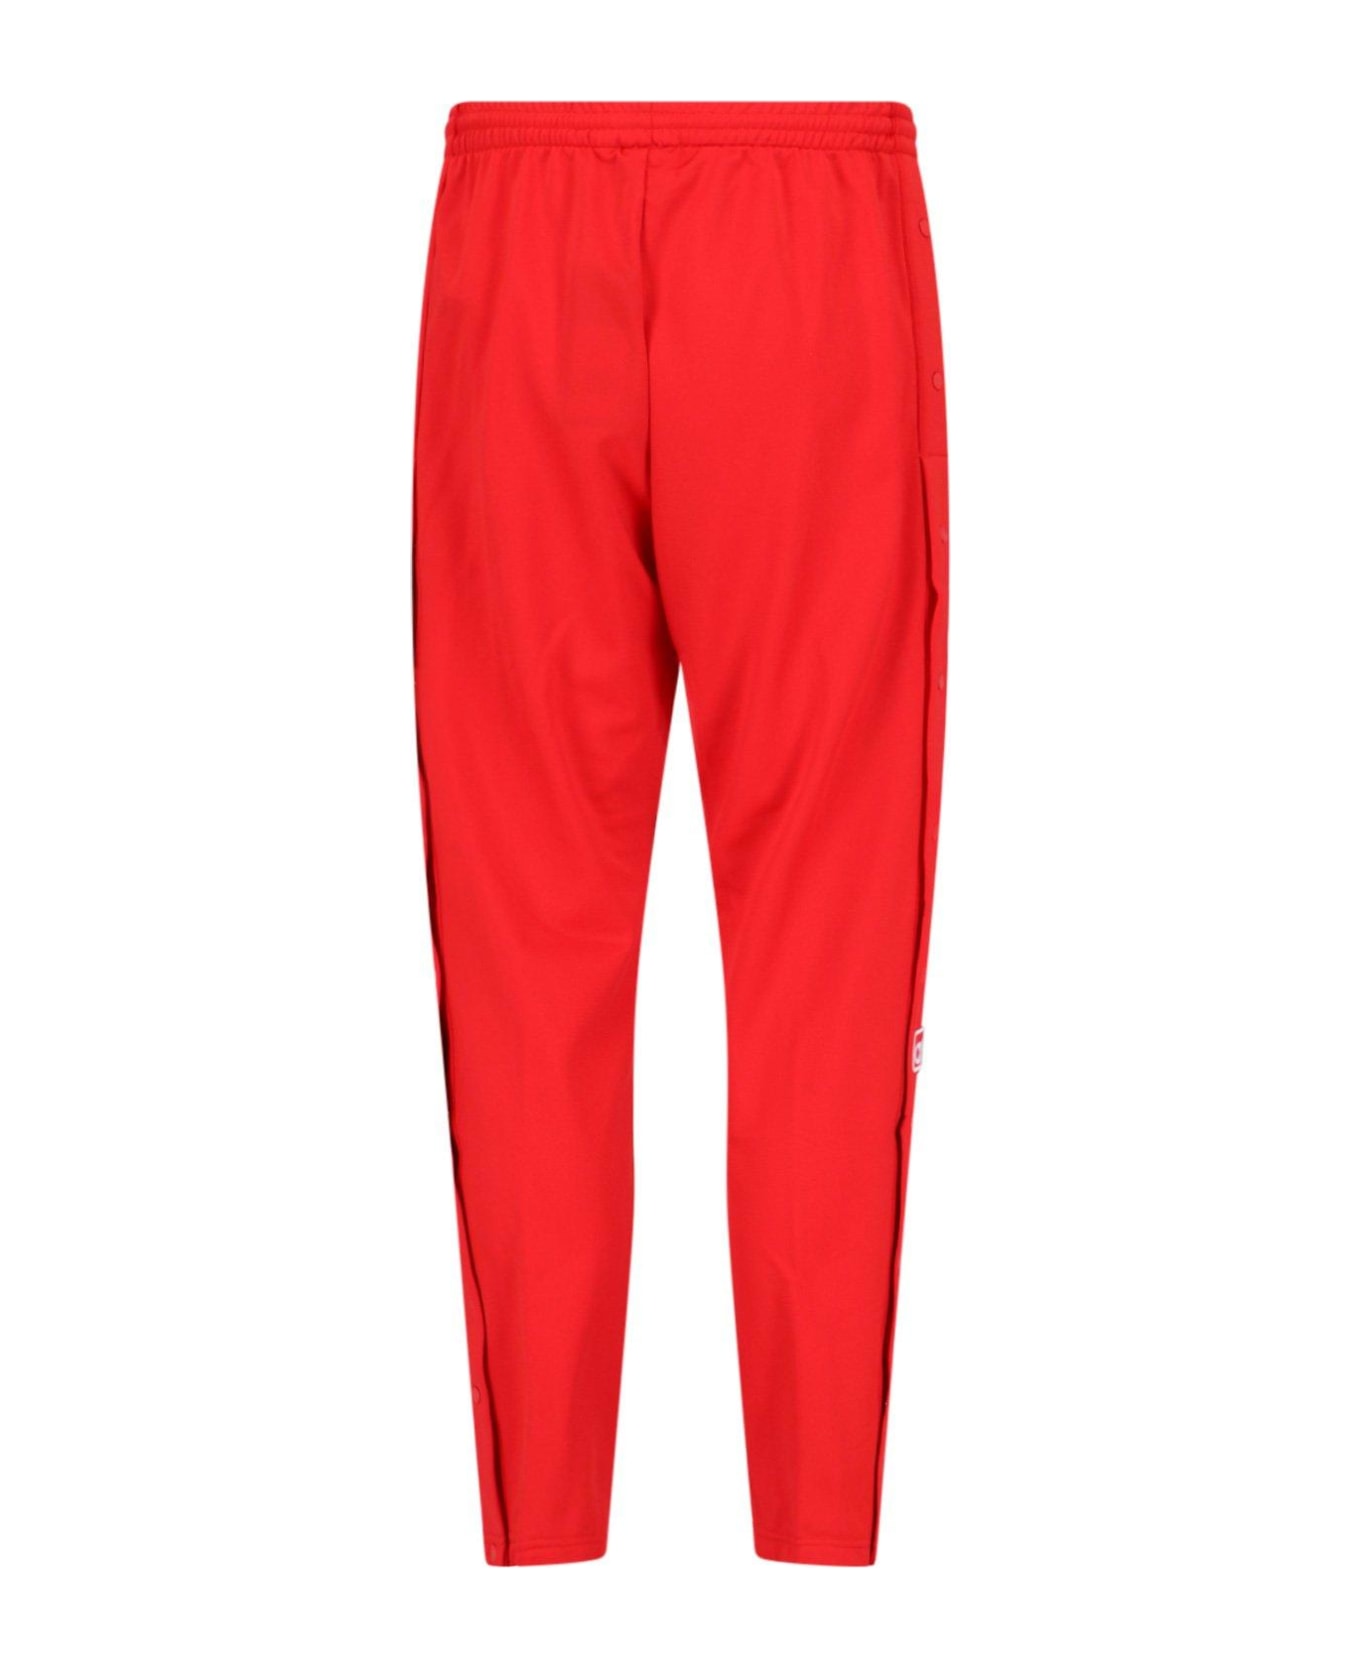 Adidas Pant Adidas - RED スウェットパンツ